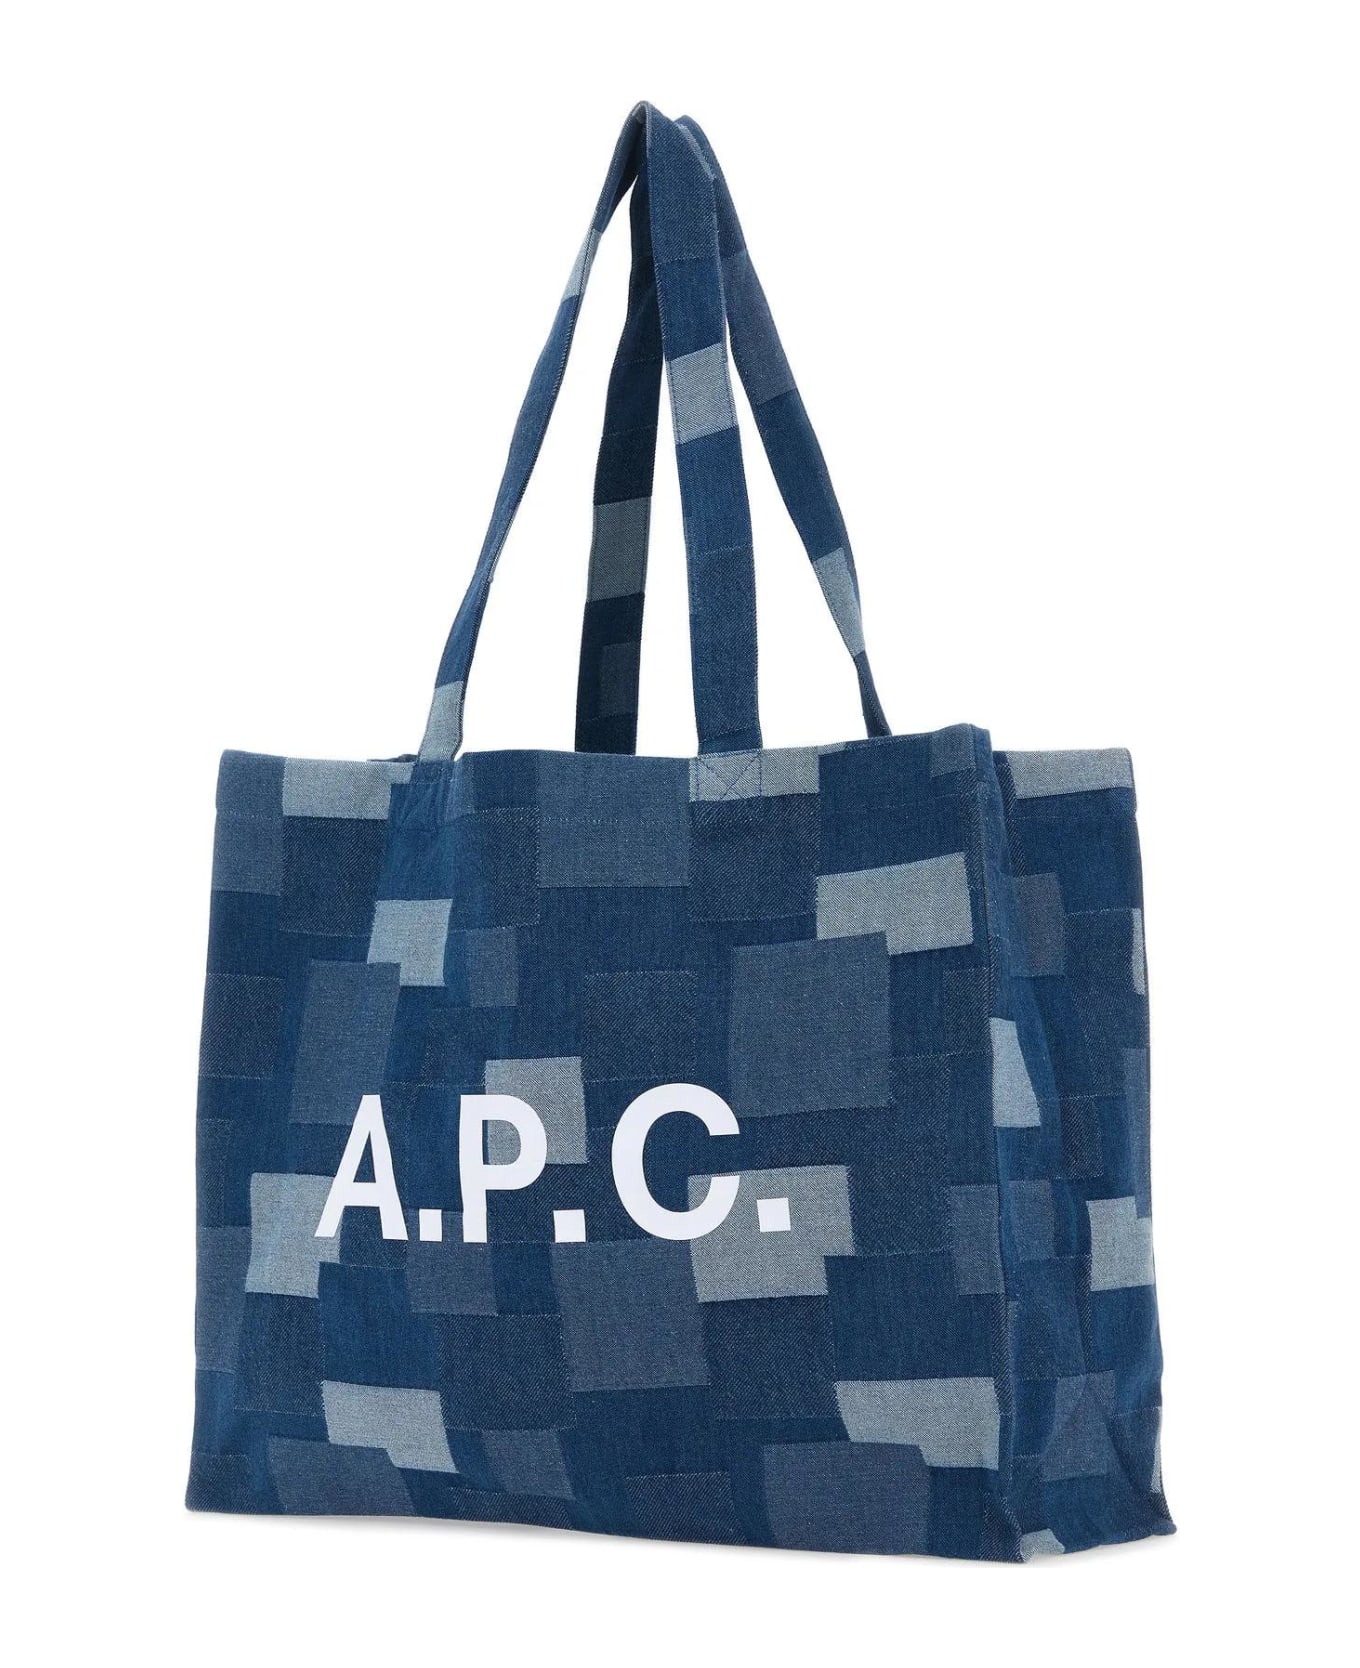 A.P.C. Diane Shopping Bag - Ial Indigo Delave